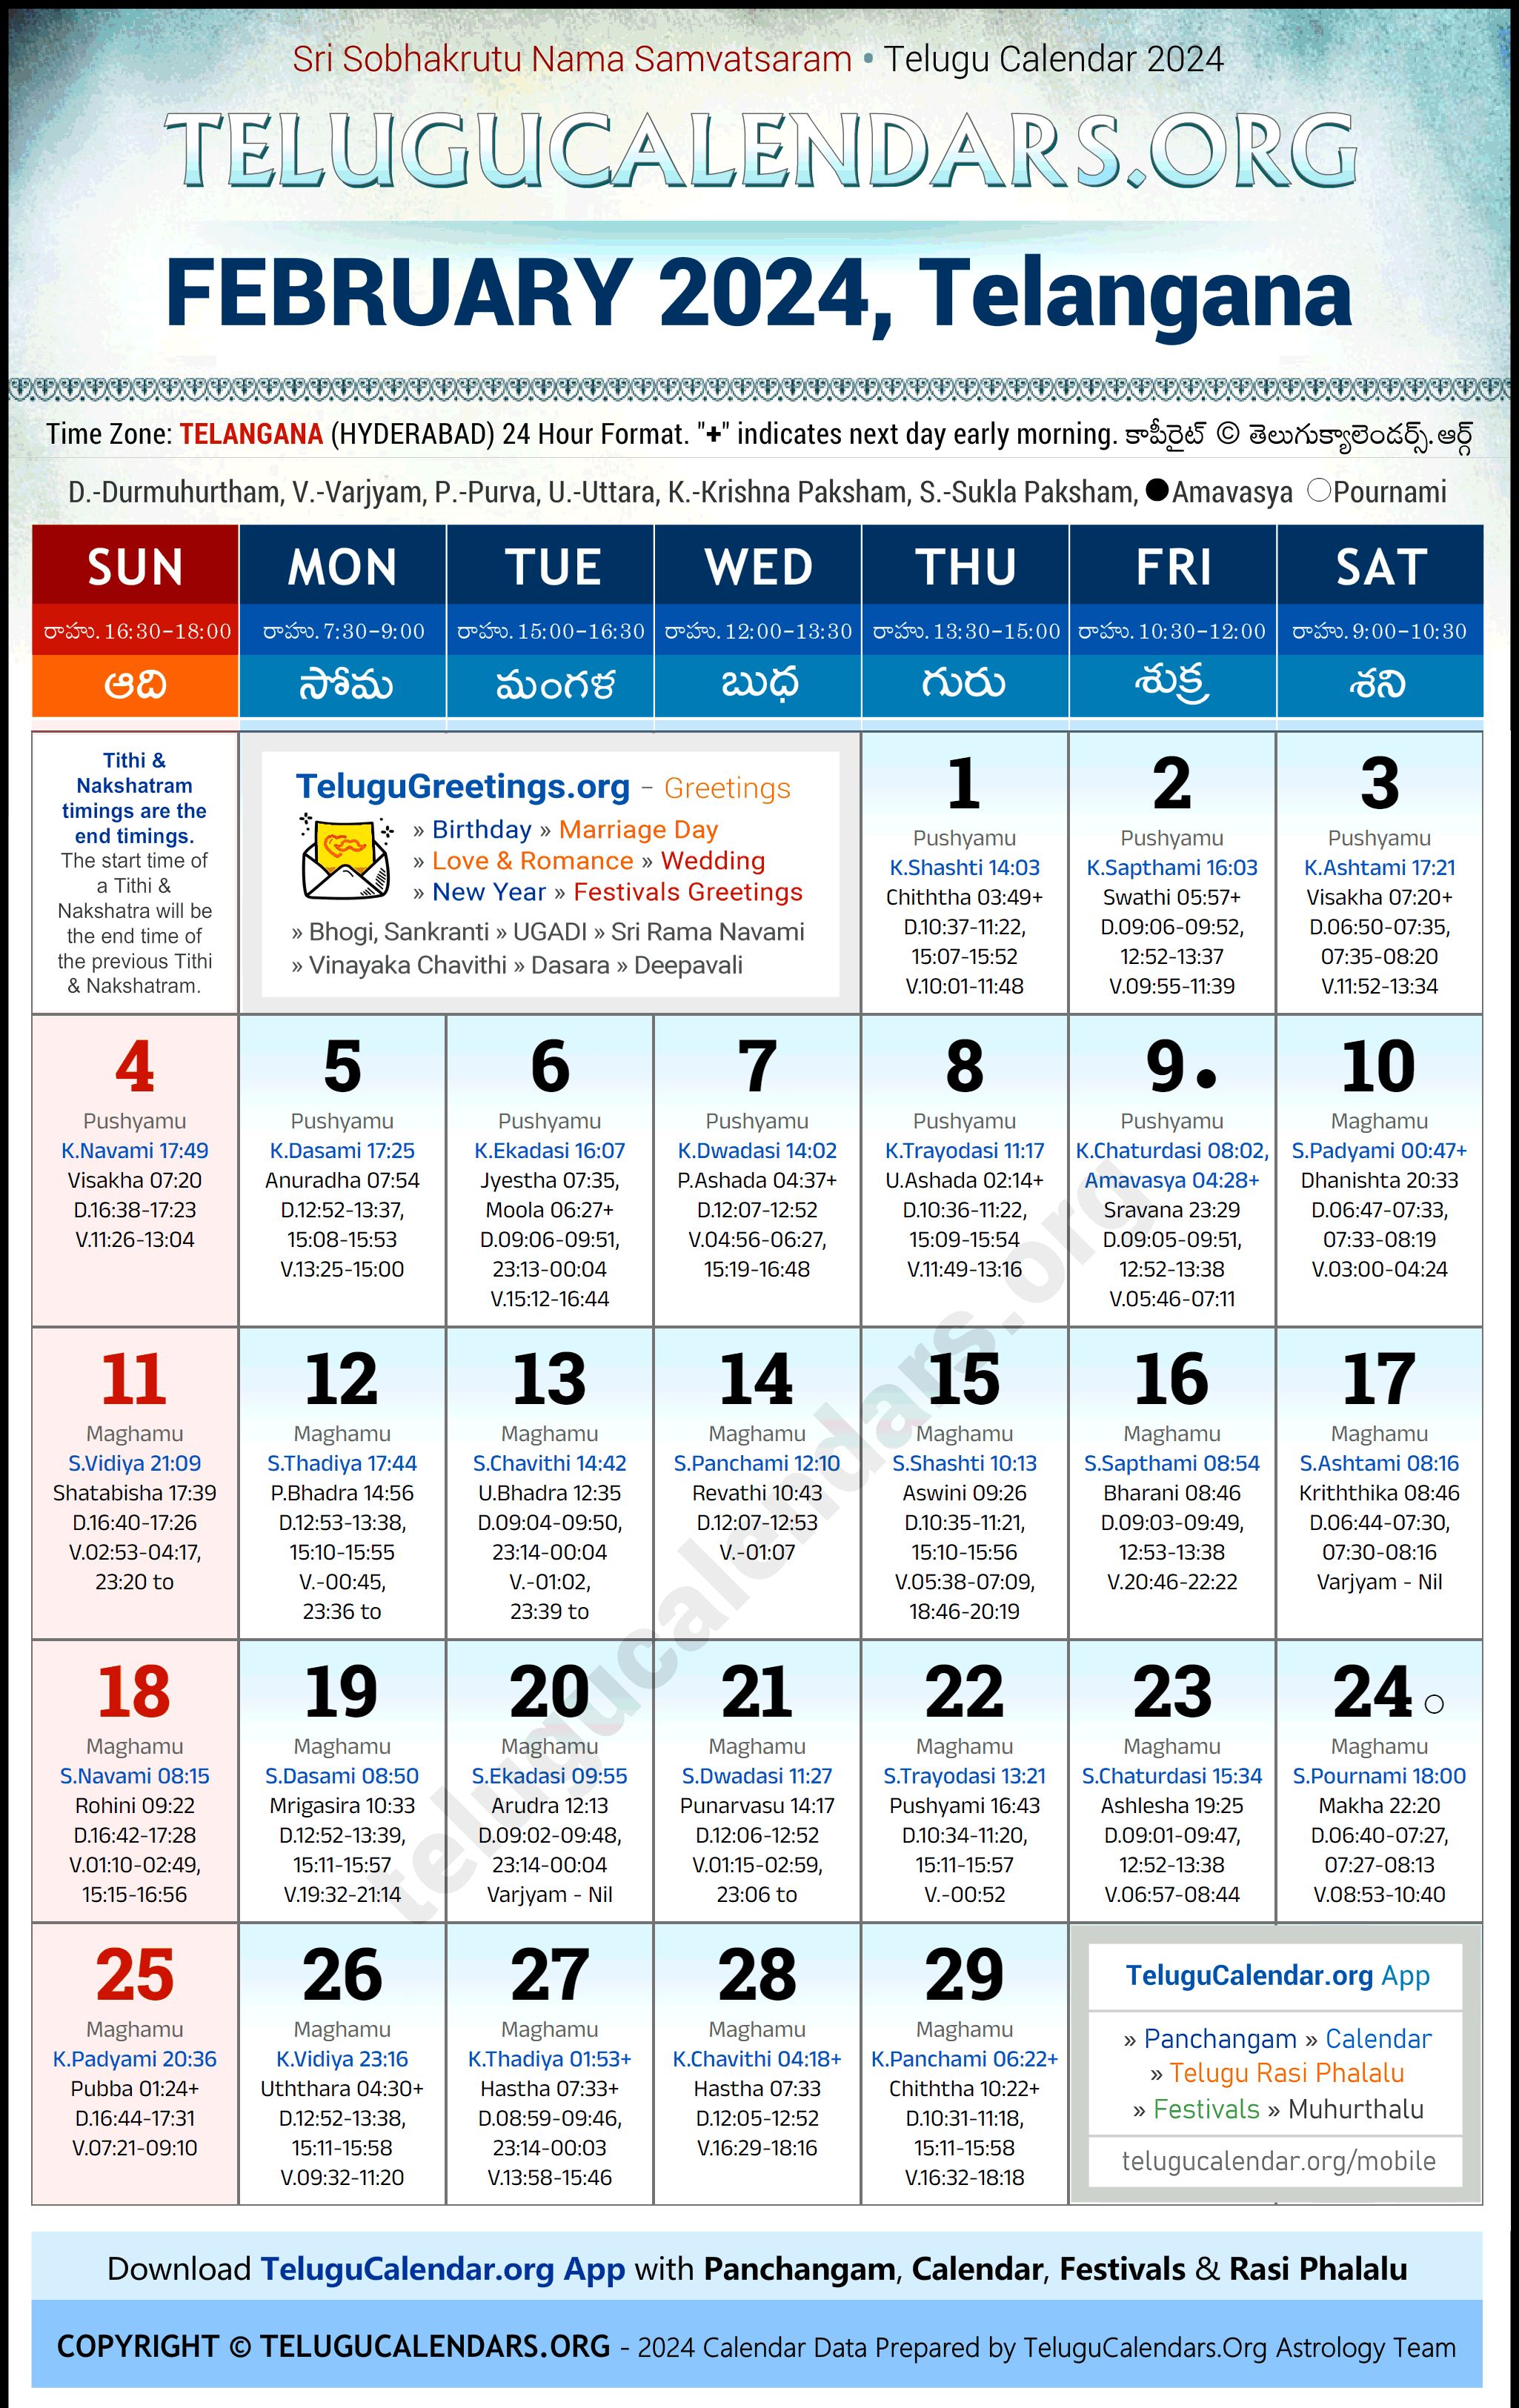 Telugu Calendar 2024 February Festivals for Telangana